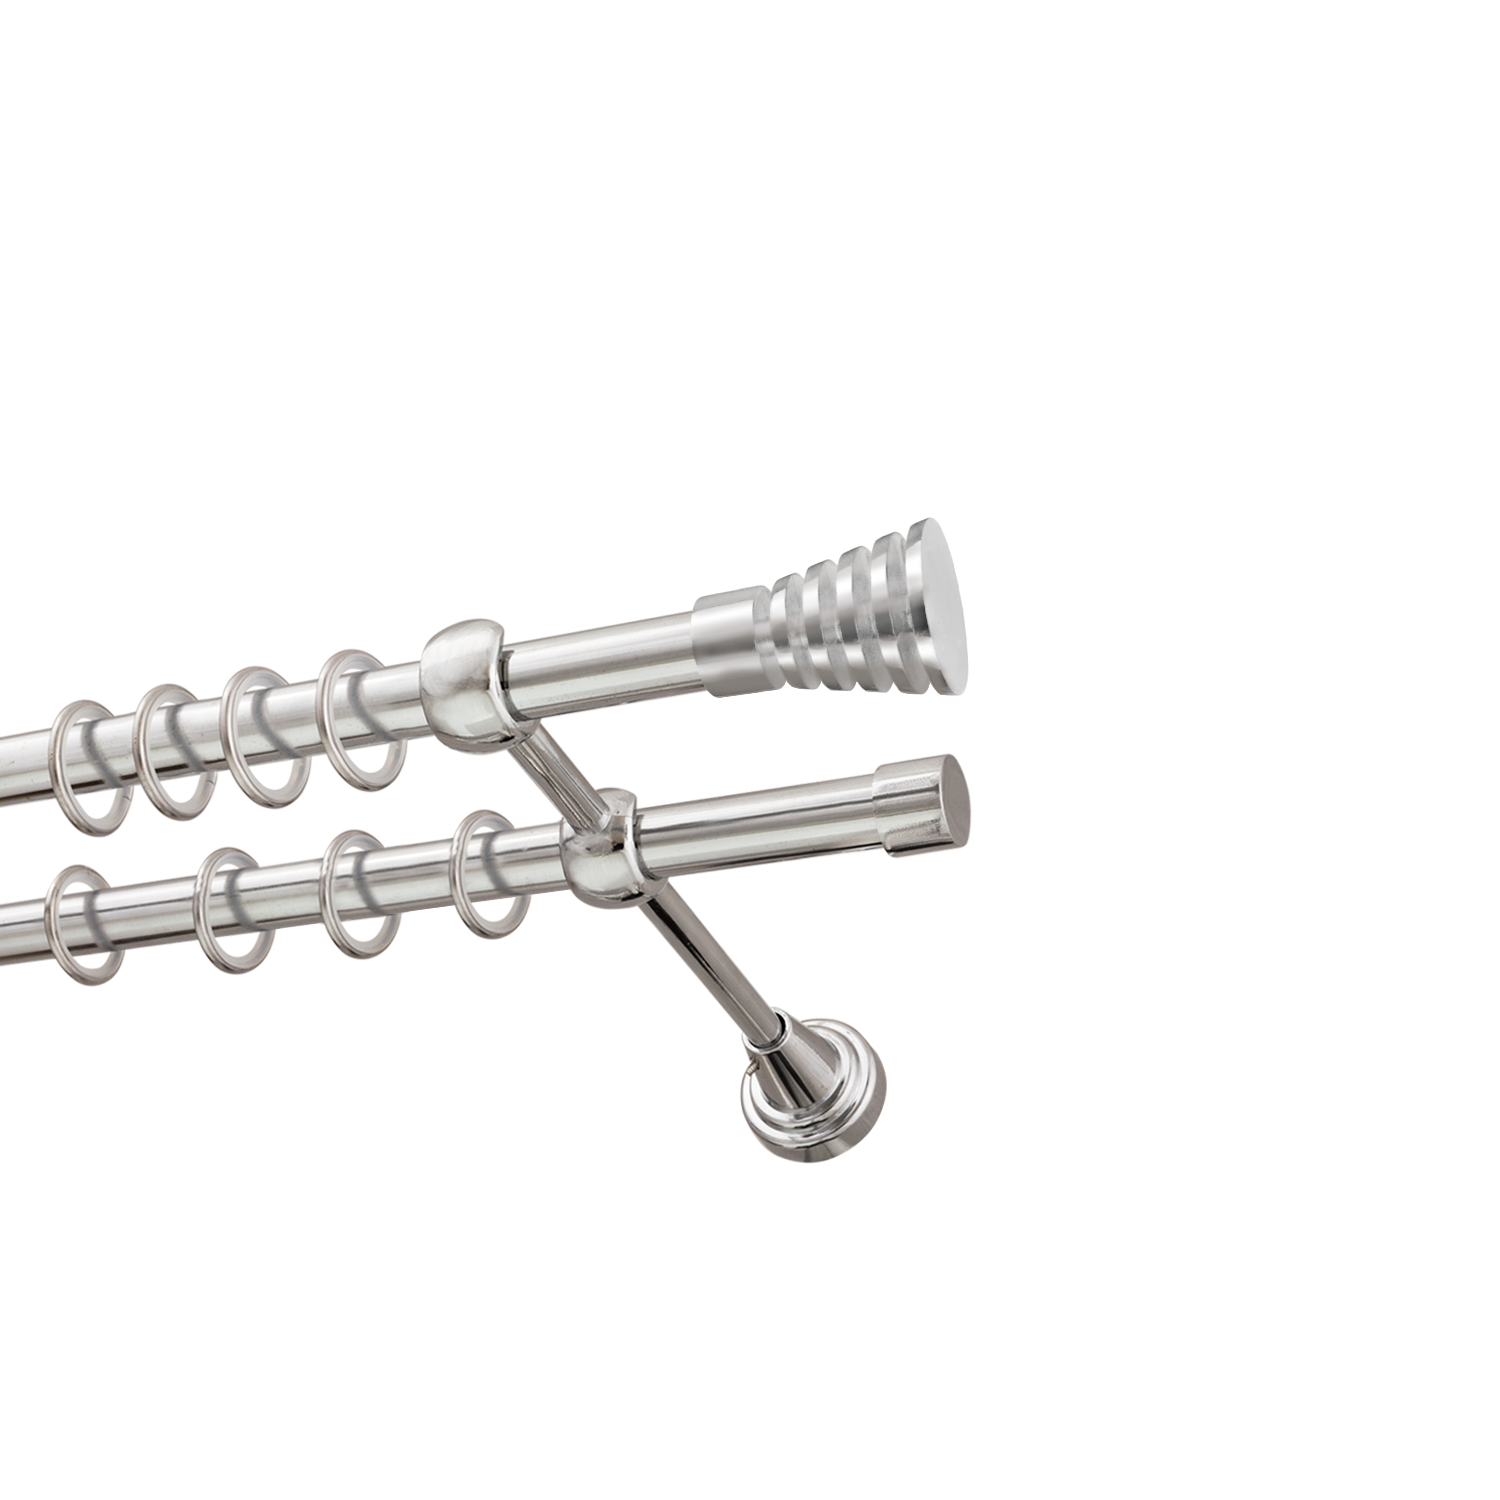 Металлический карниз для штор Верона, двухрядный 16/16 мм, серебро, гладкая штанга, длина 180 см